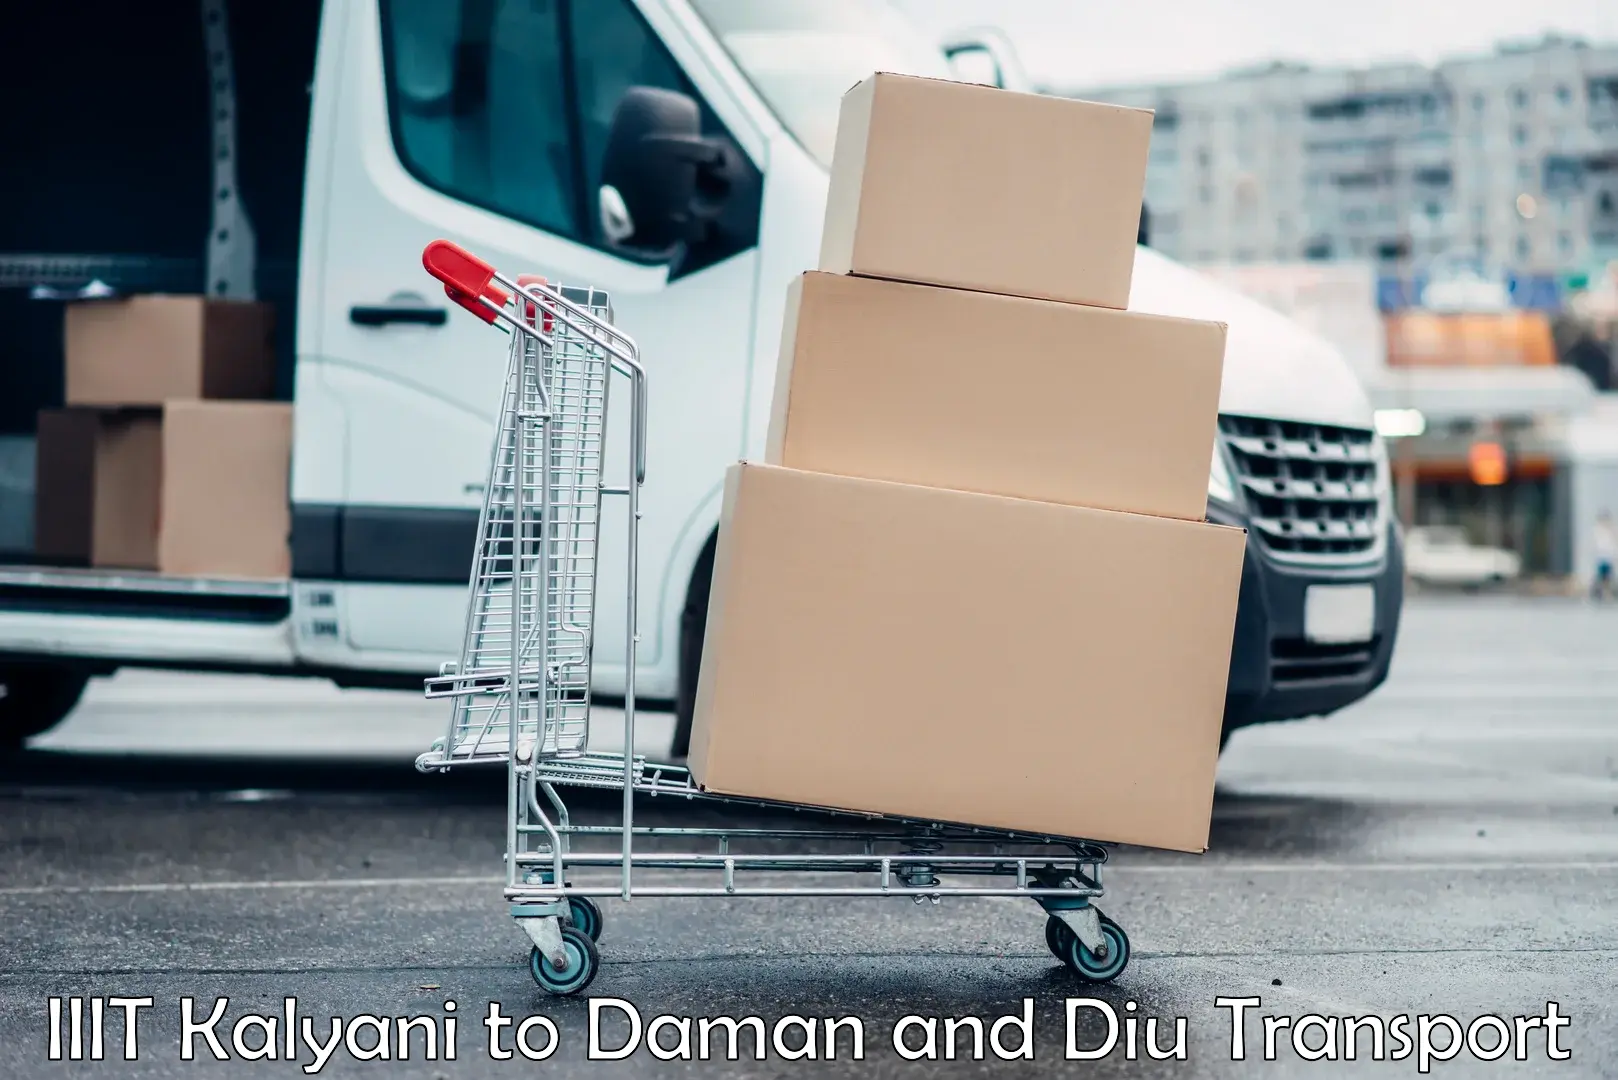 Transport in sharing IIIT Kalyani to Daman and Diu